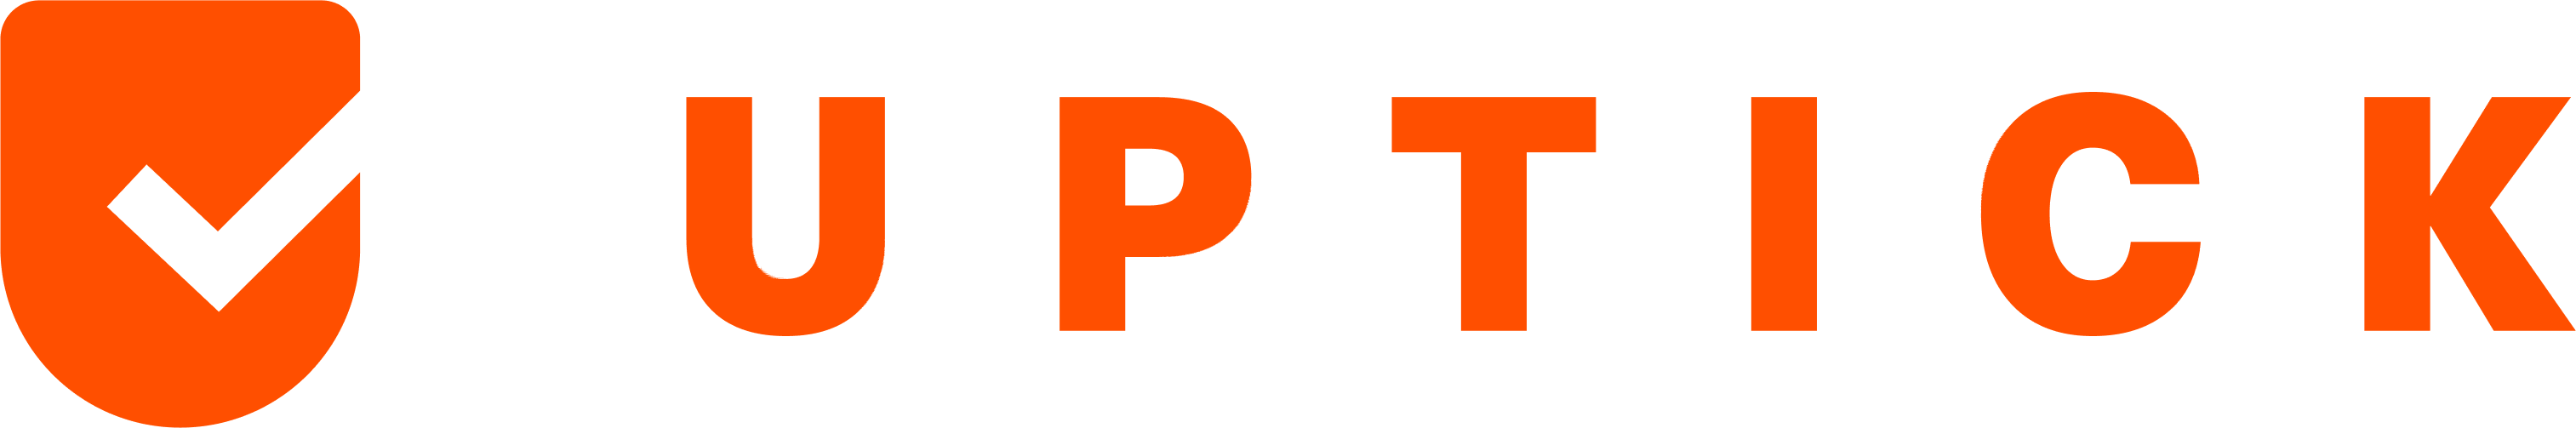 Uptick Workforce logo